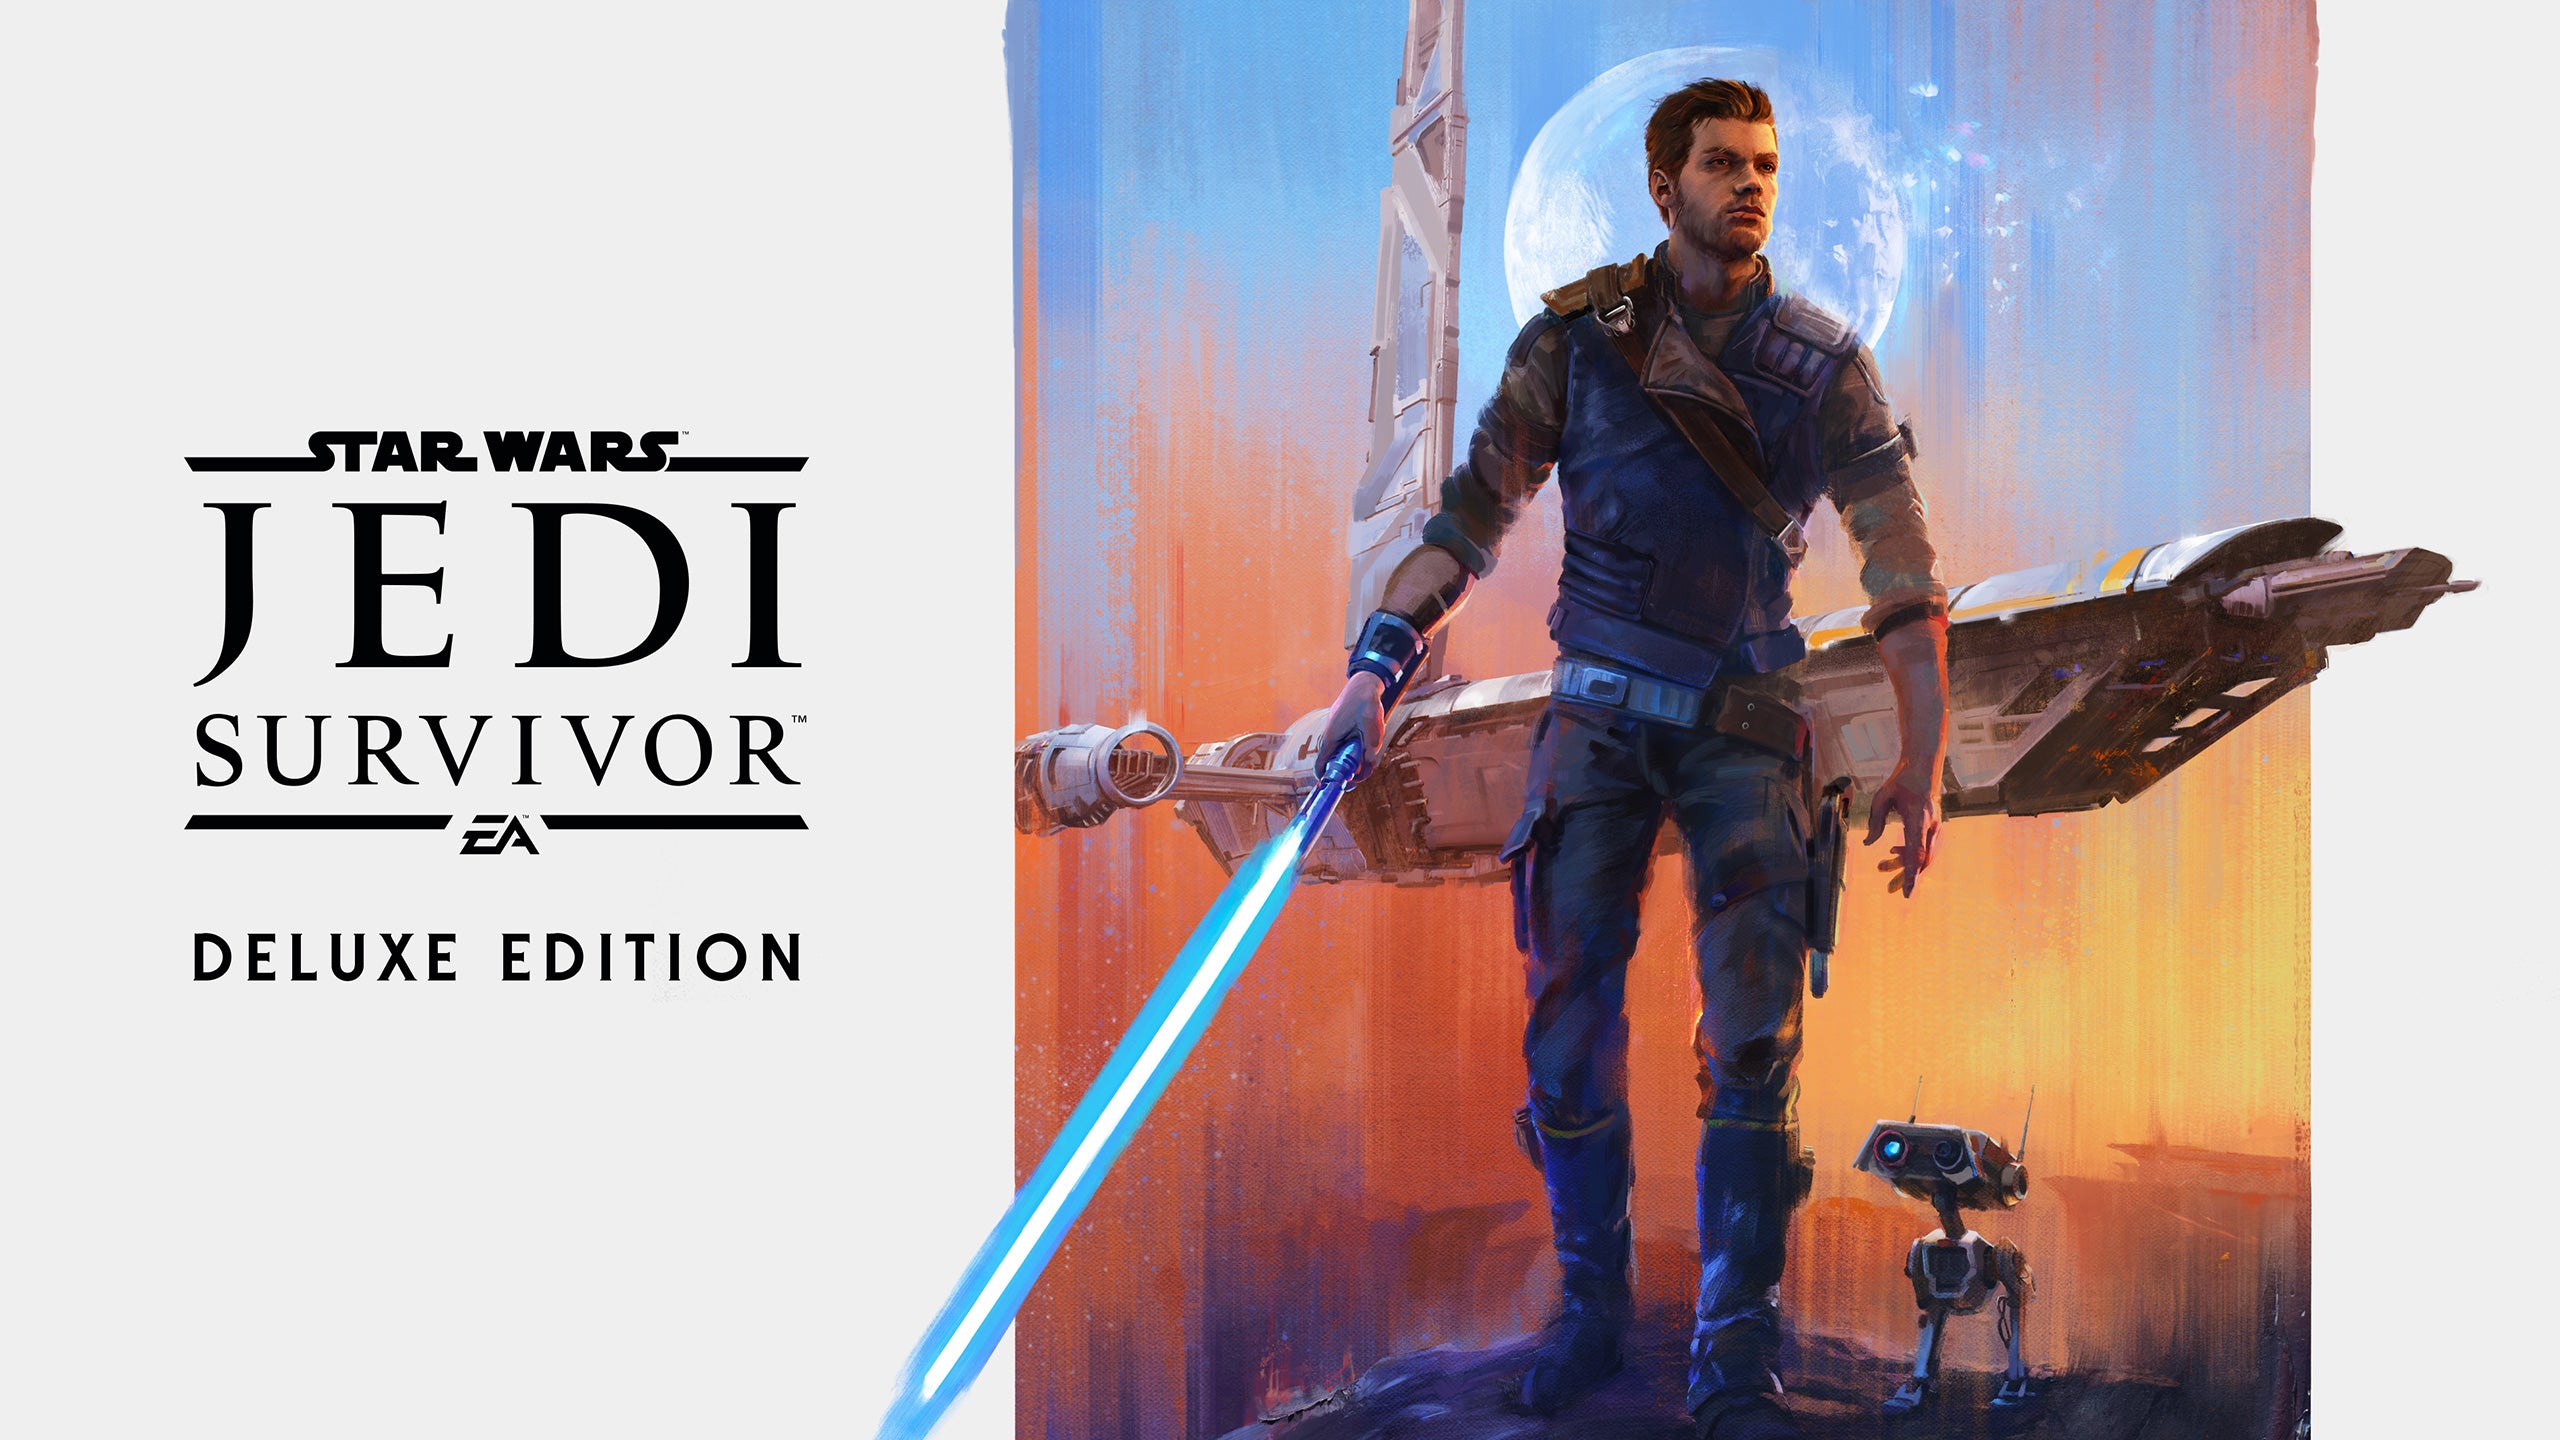 Star Wars Jedi: Survivor Disponible ahora en PlayStation 5, Xbox Series X|S y PC